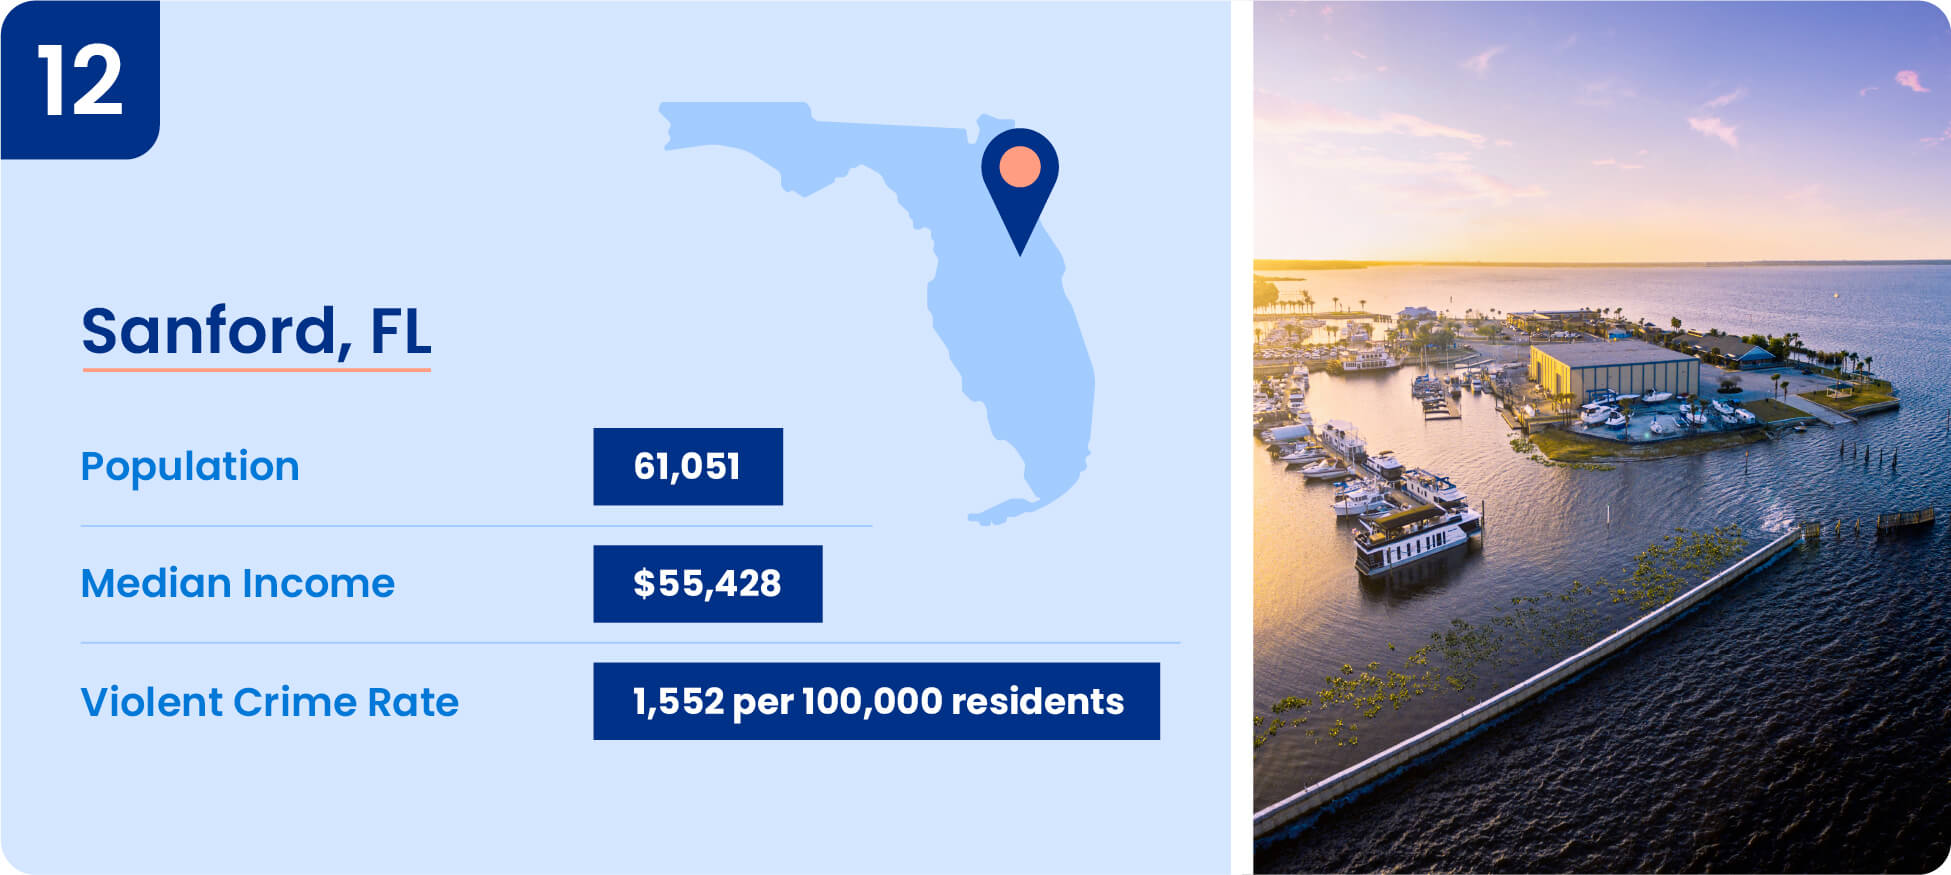 Image shows safety data including median income, population, and violent crime rate for Sanford, Florida.